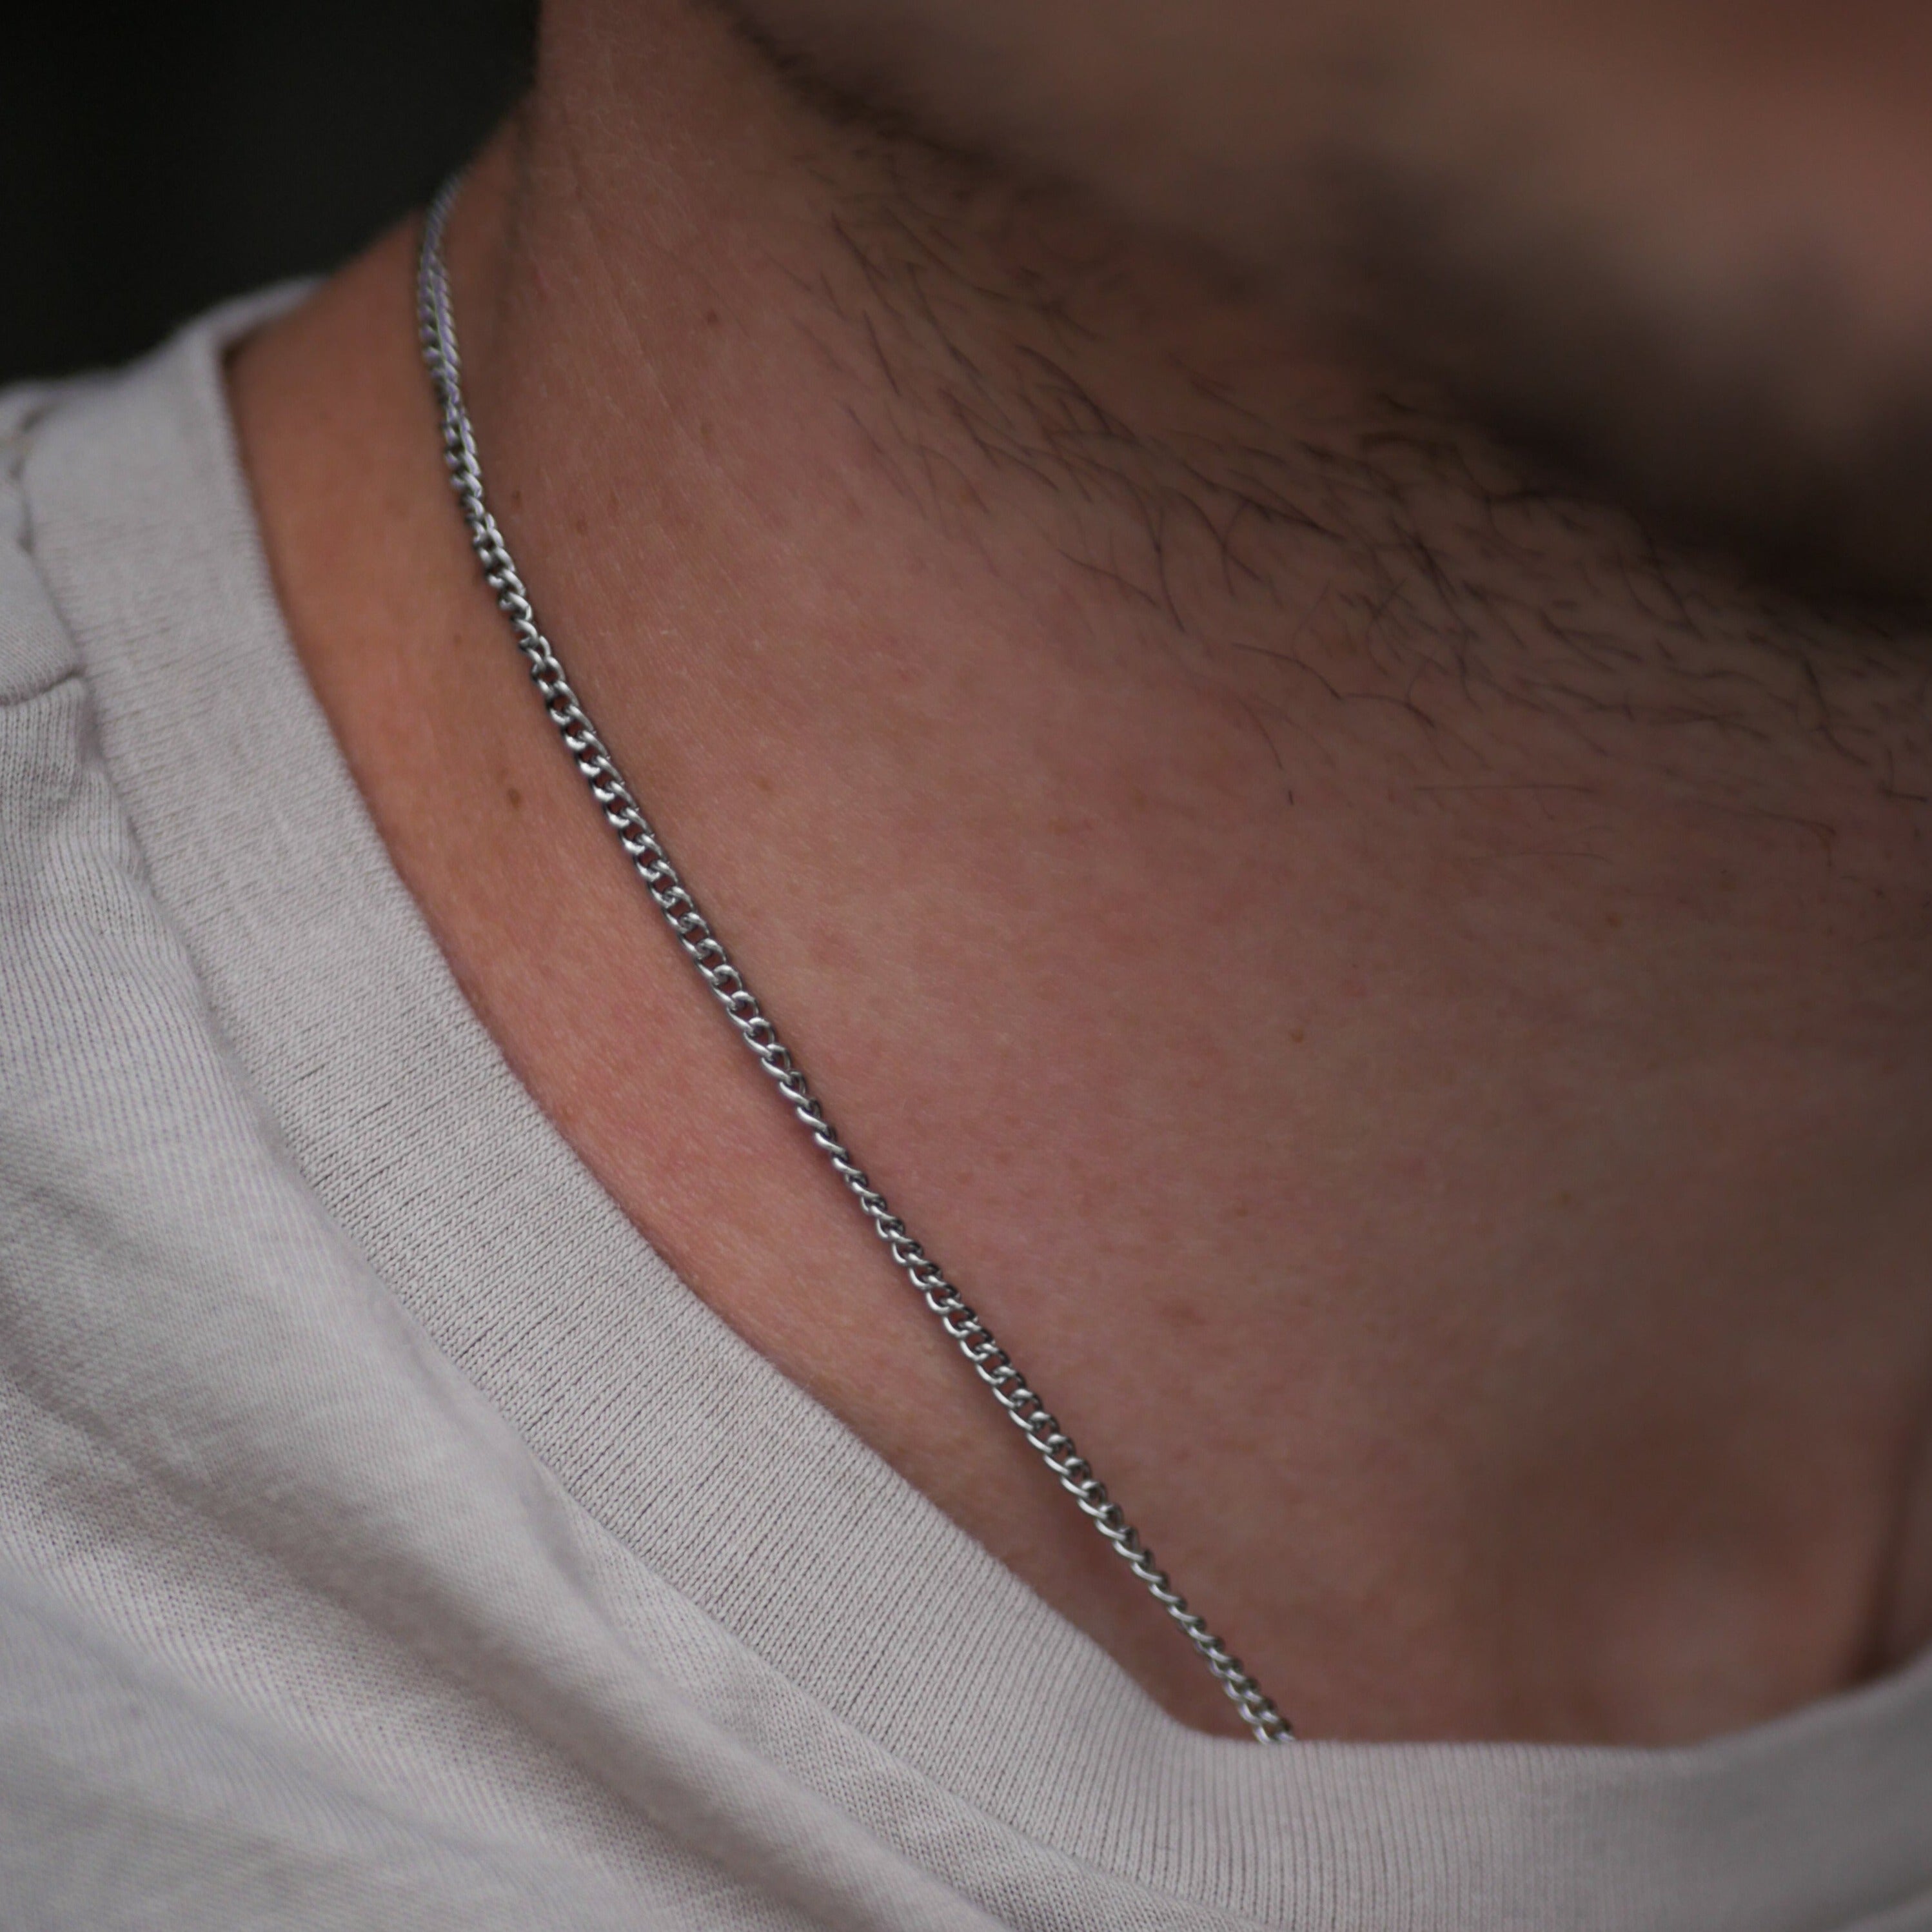 NL Valknut pendant - Silver-toned